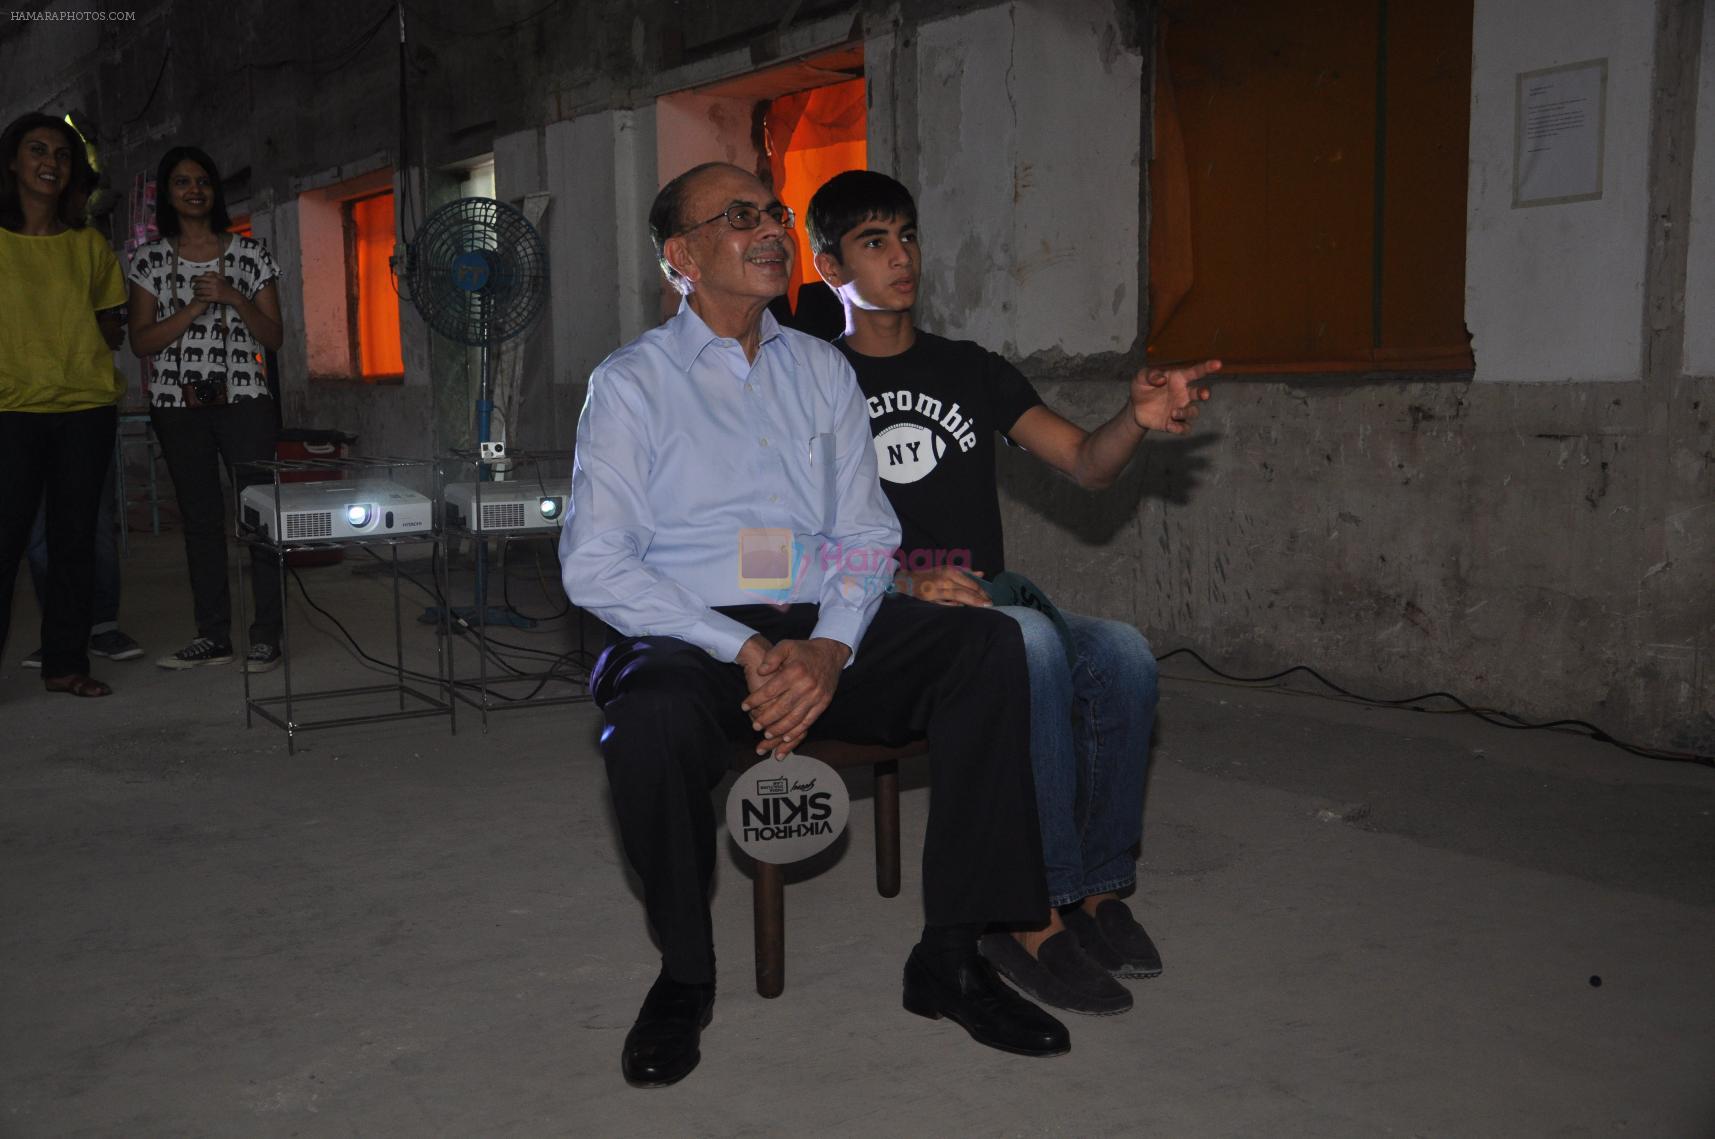 Mr. Adi Godrej with his grandson Aryaan Dubash watching the interactive art installation by Aditi Kulkarni at Godrej Vikhroli skin event in Mumbai on 15th Dec 2013